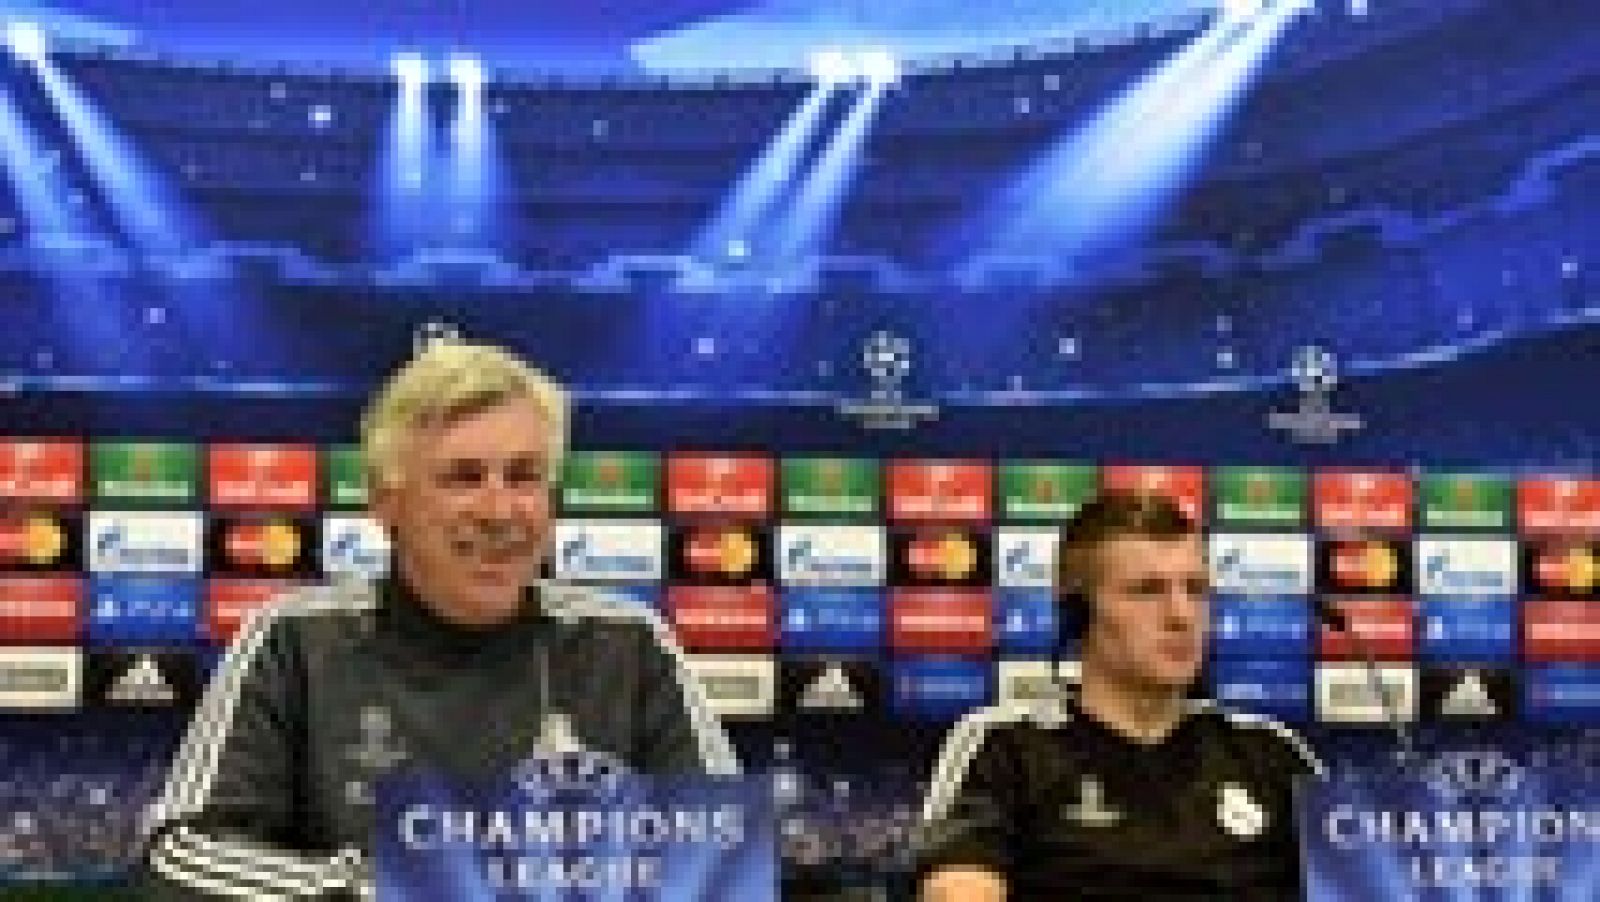 El entrenador del Real Madrid, Carlo Ancelotti, ha lanzado un mensaje en rueda de prensa previa al partido de vuelta de cuartos de la Champions League ante el Atlético de Madrid. La plantilla está con la moral a tope, "más motivada imposible".